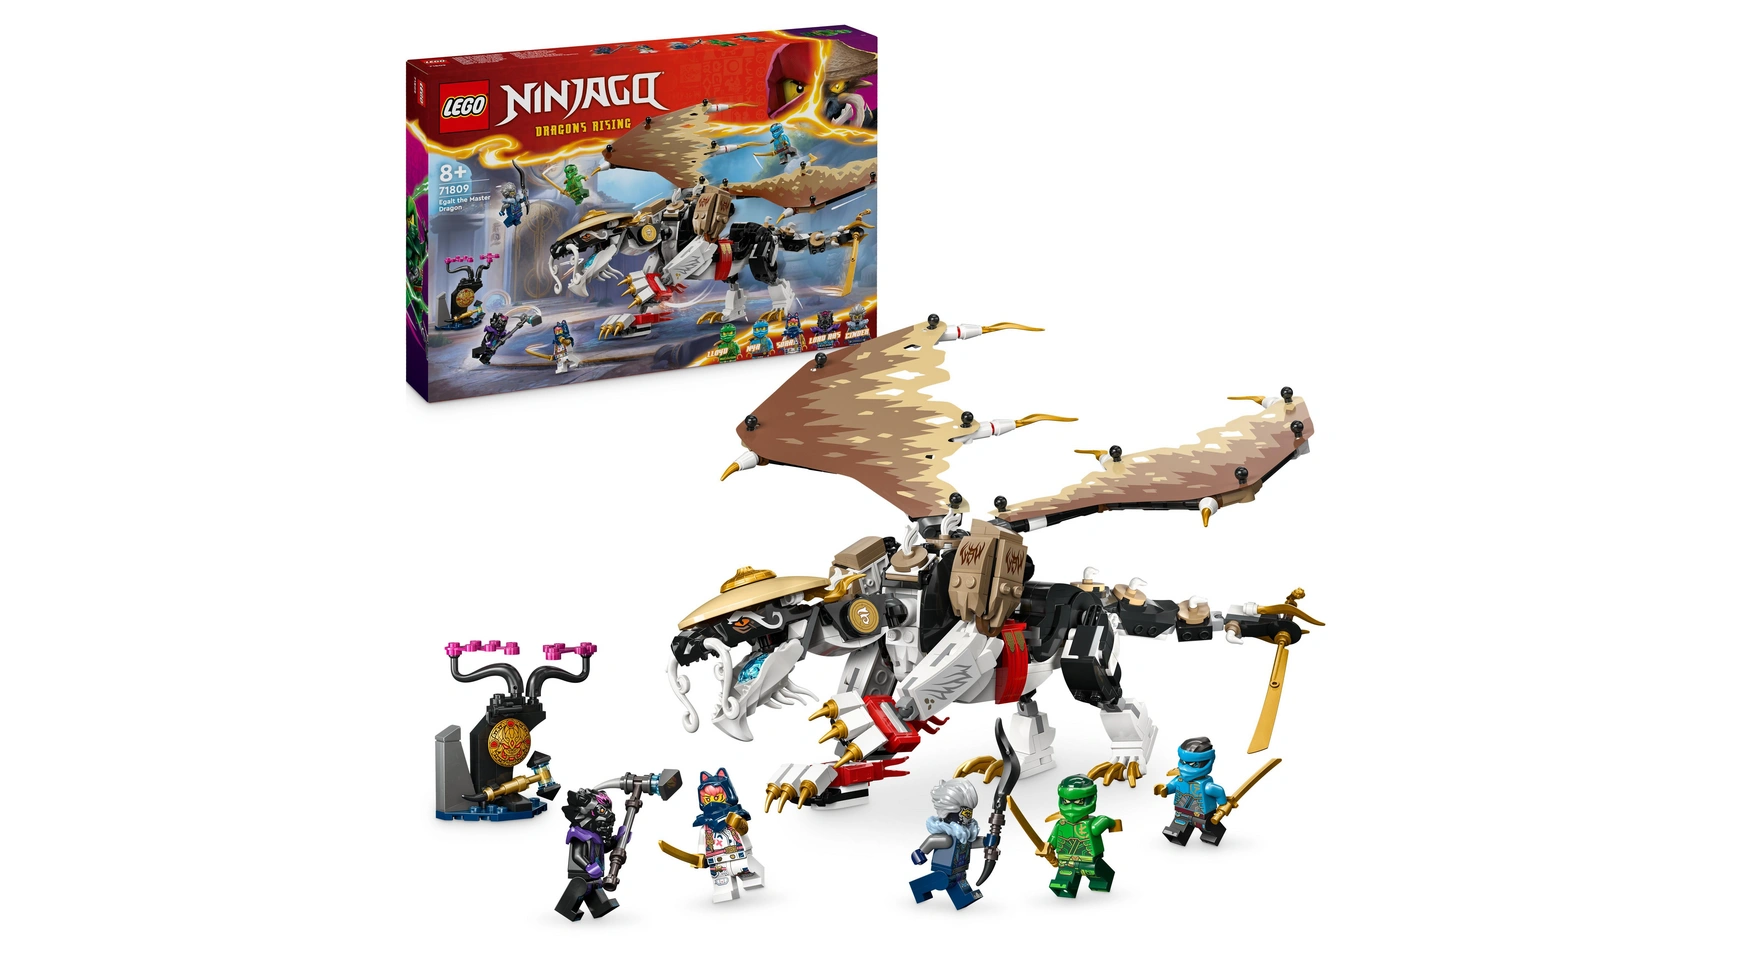 Lego NINJAGO Эгалт повелитель драконов, набор ниндзя с игрушками-драконами цена и фото